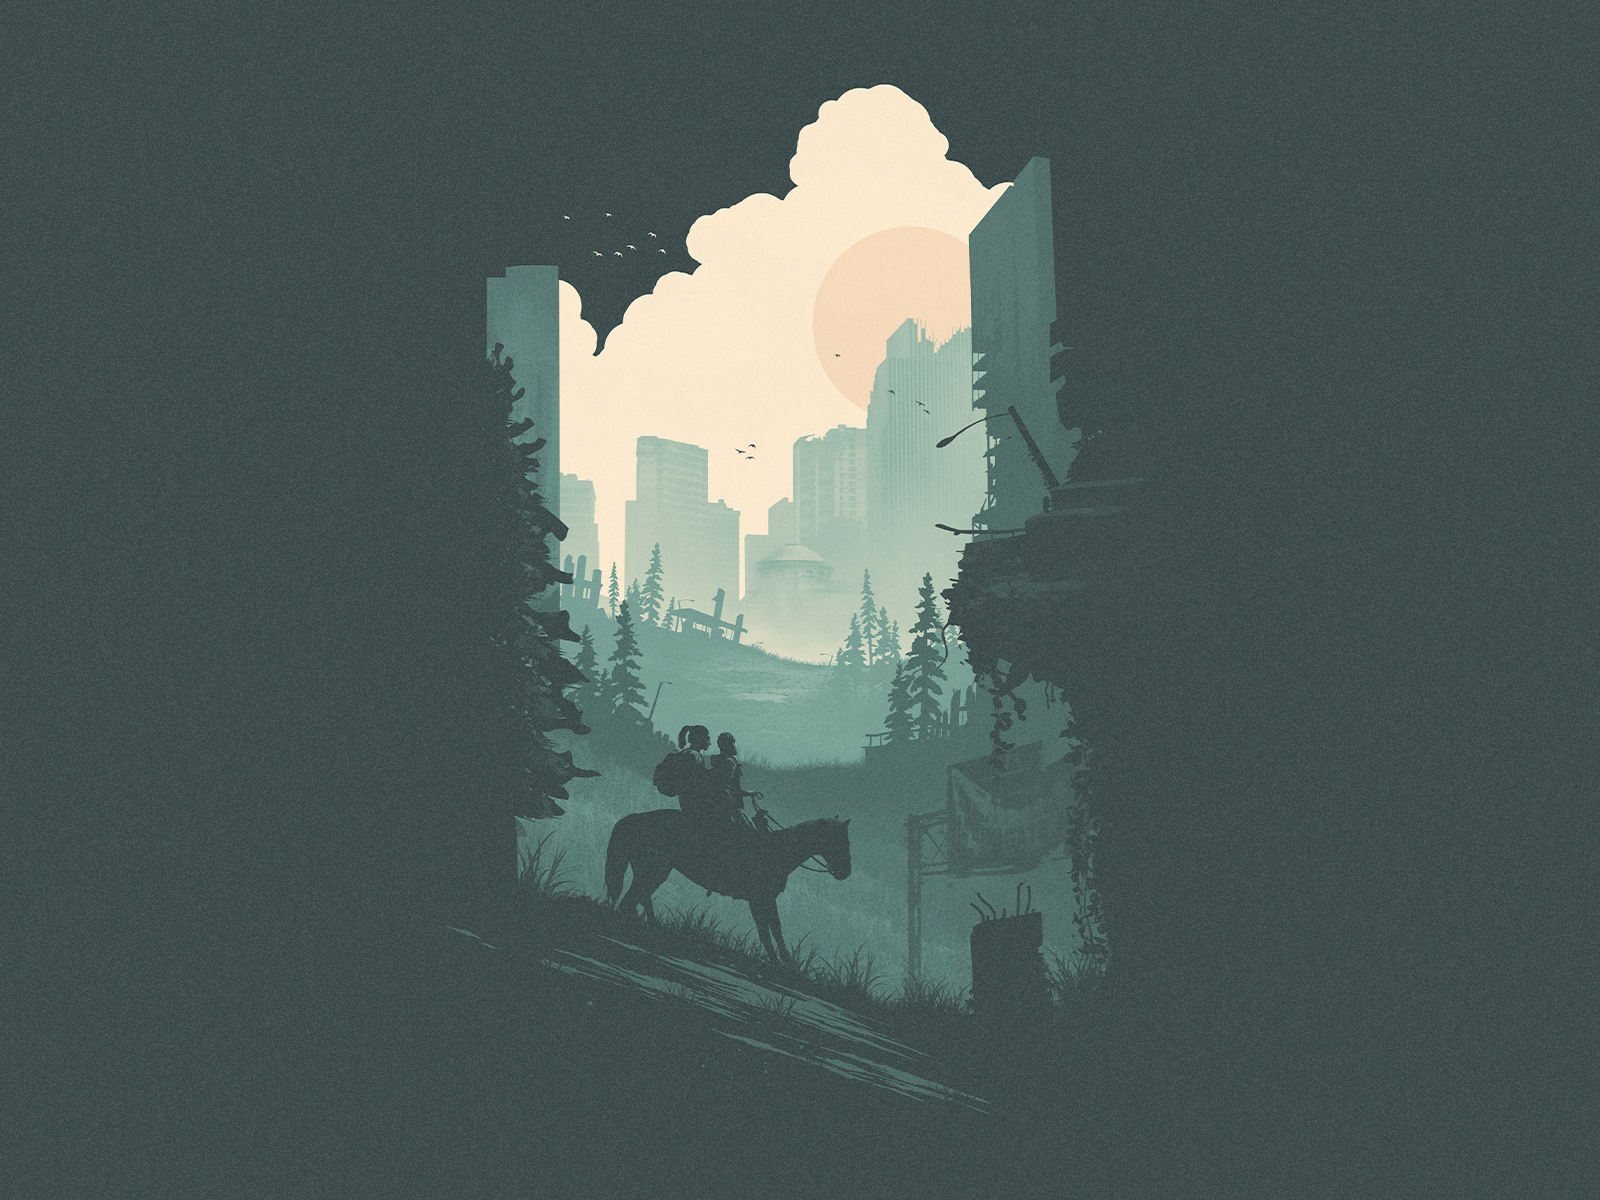 The Last of Us 2 Wallpaper - JNSVMLI by jnsvmli on DeviantArt